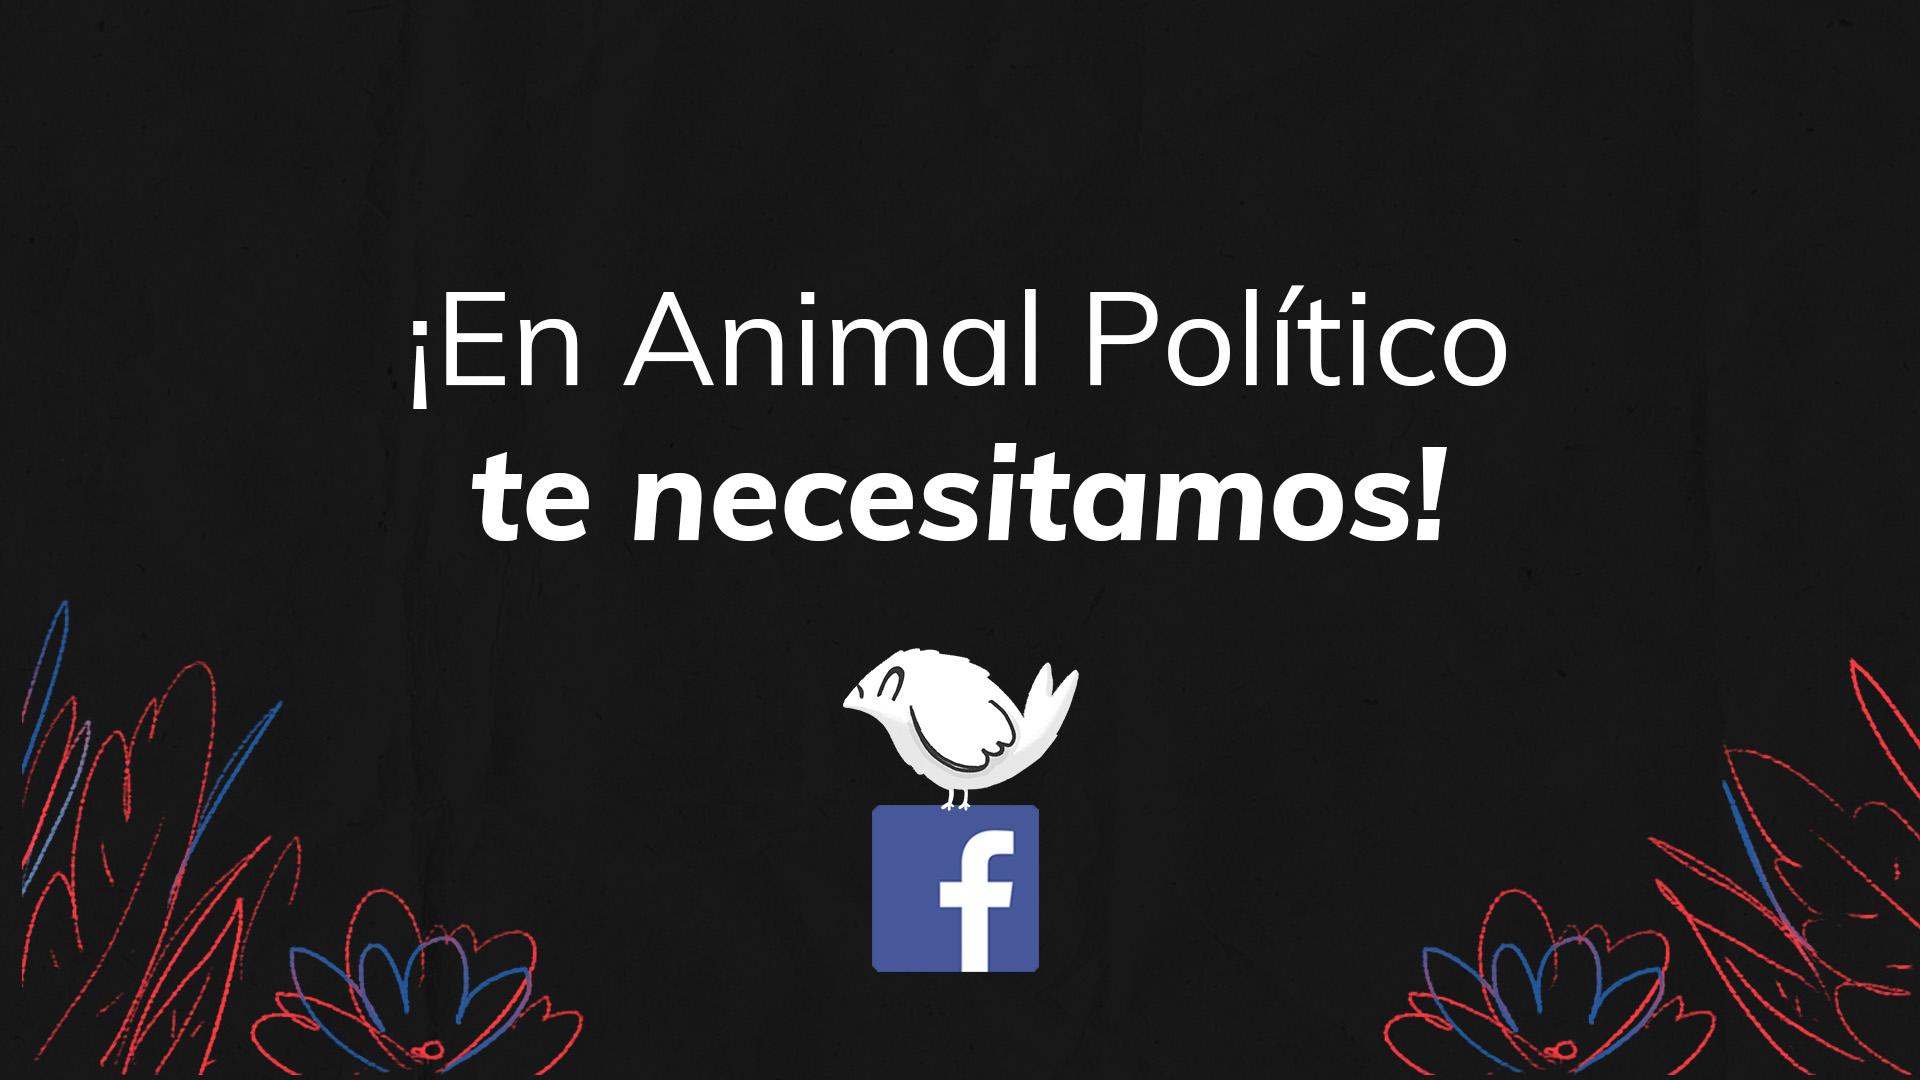 ¡Suscríbete a Animal Político! Con tu apoyo mensual, seguiremos haciendo periodismo independiente